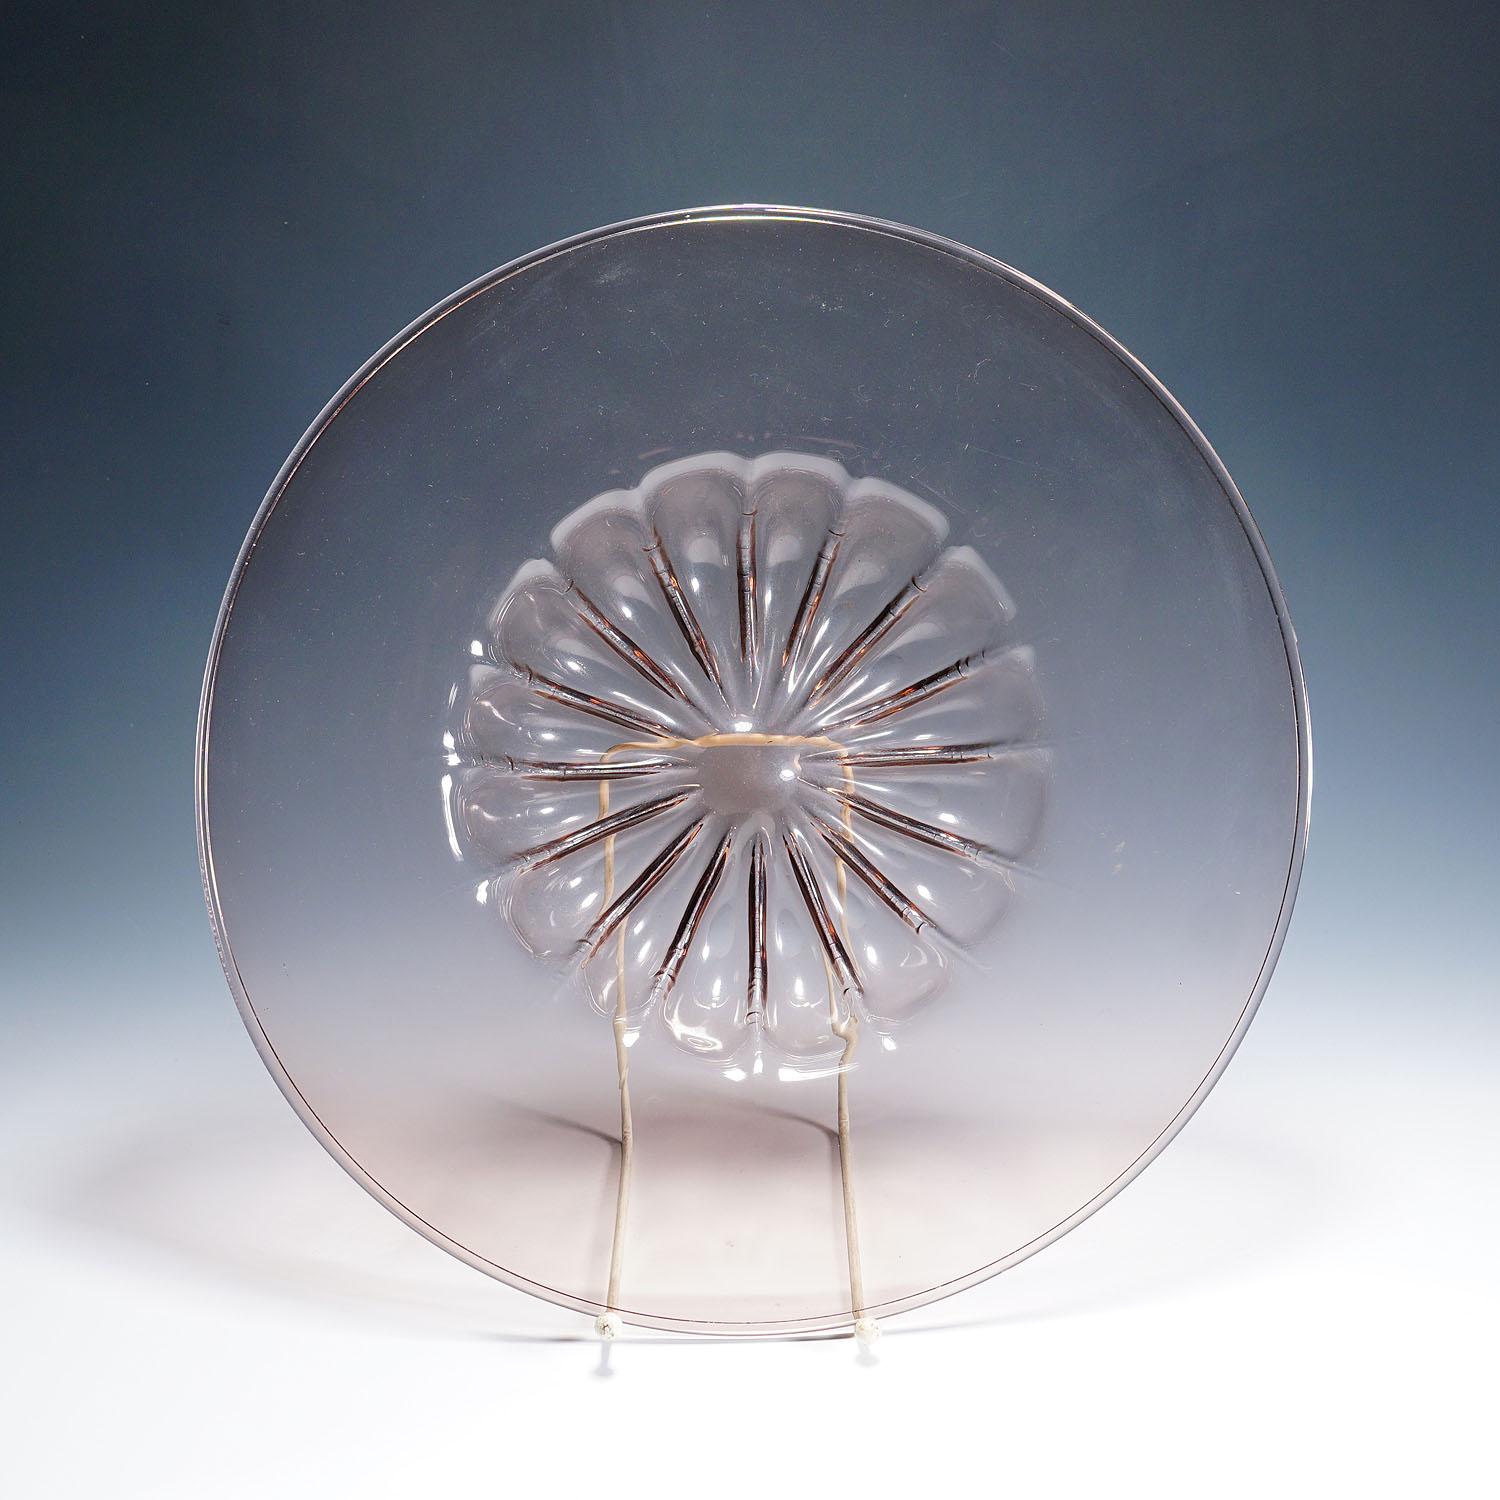 Hand-Crafted Large Vetro Soffiato Glass Dish by Vittorio Zecchin for Venini Murano ca. 1925 For Sale